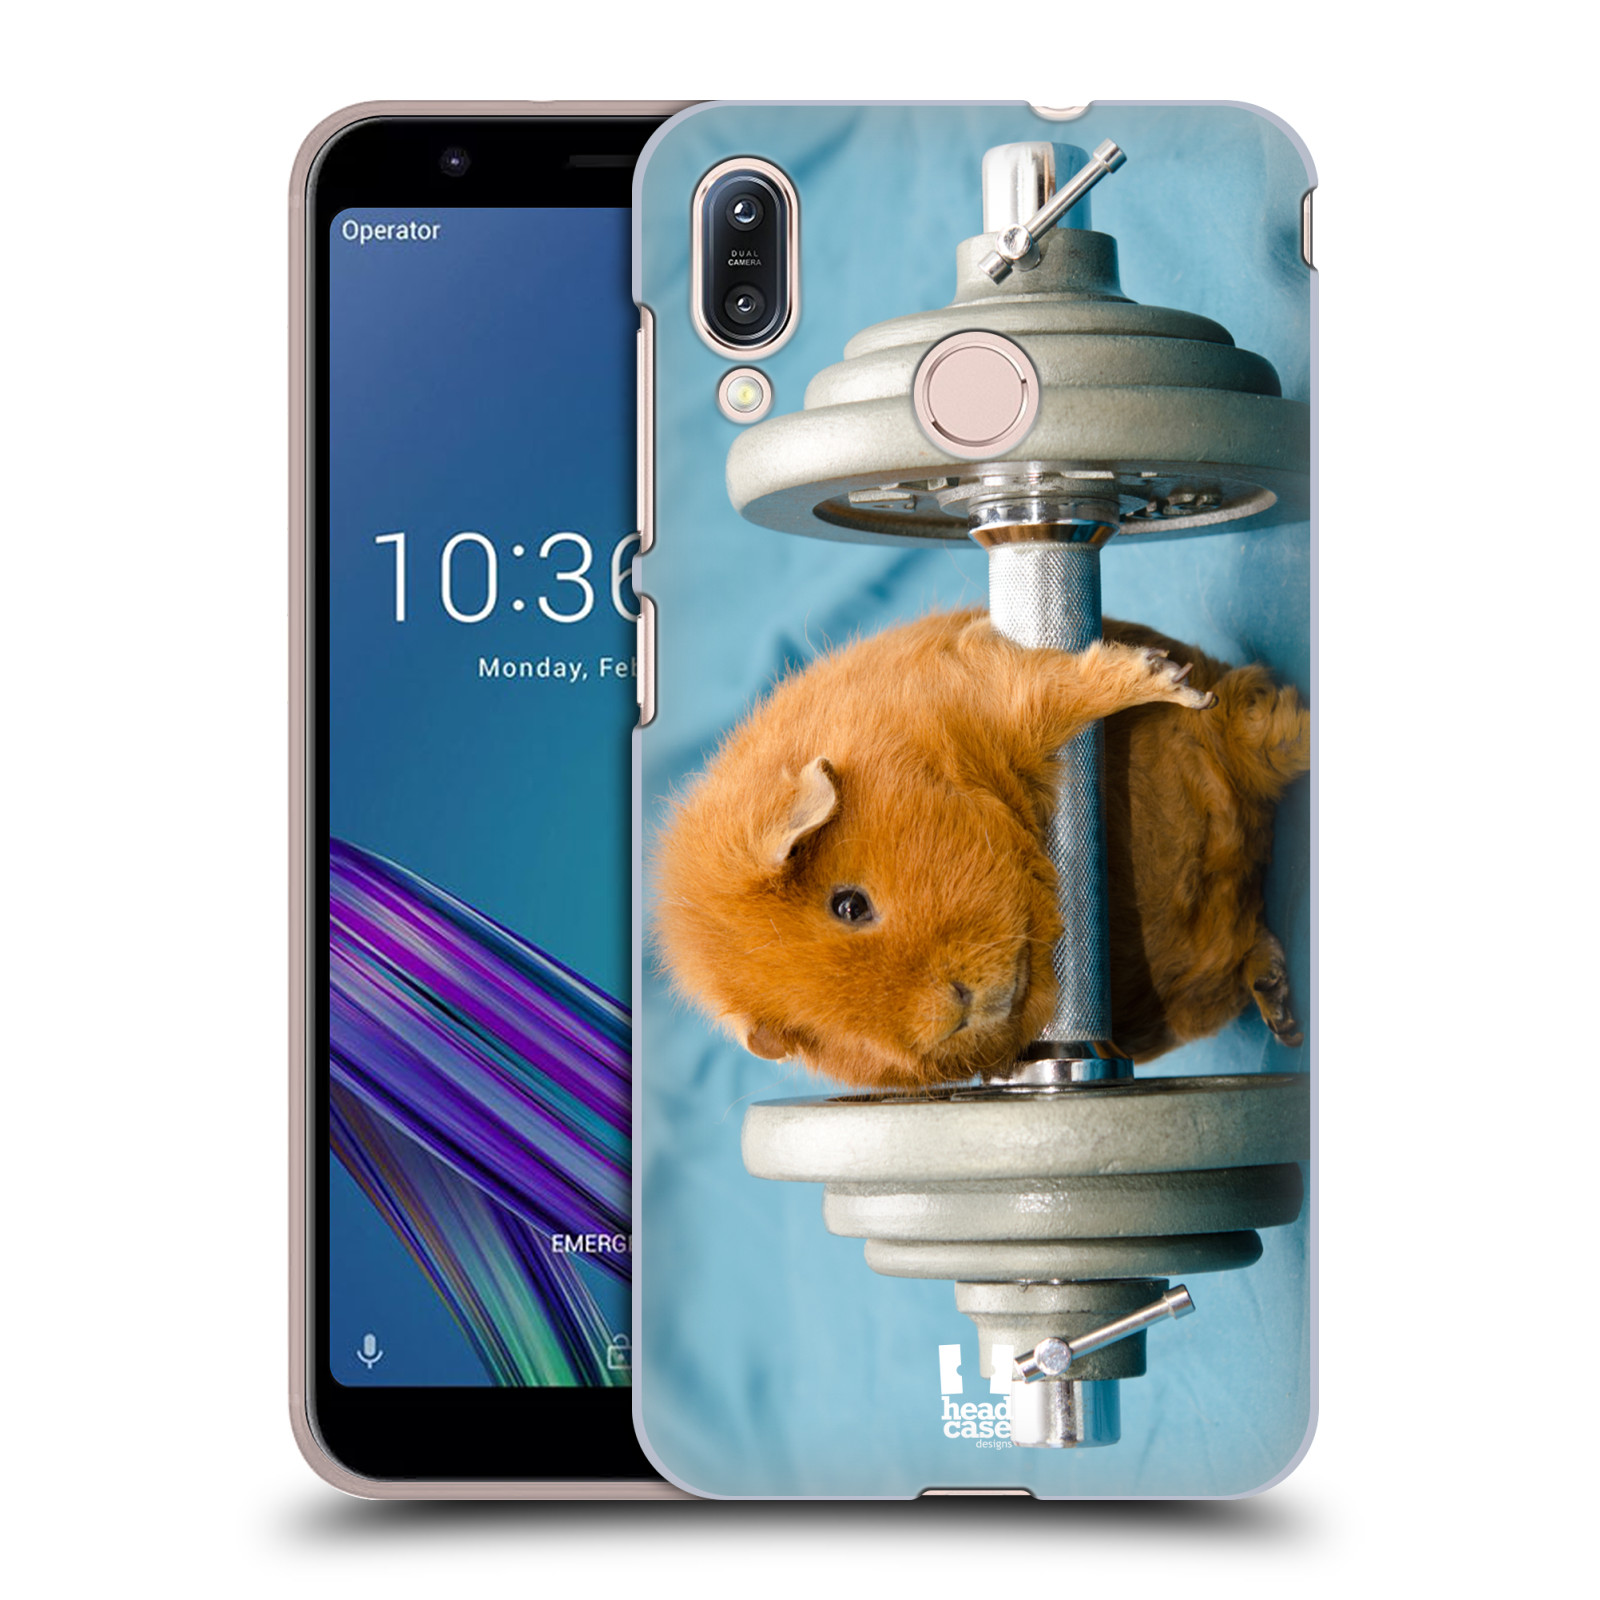 Pouzdro na mobil Asus Zenfone Max M1 (ZB555KL) - HEAD CASE - vzor Legrační zvířátka křeček/morče silák